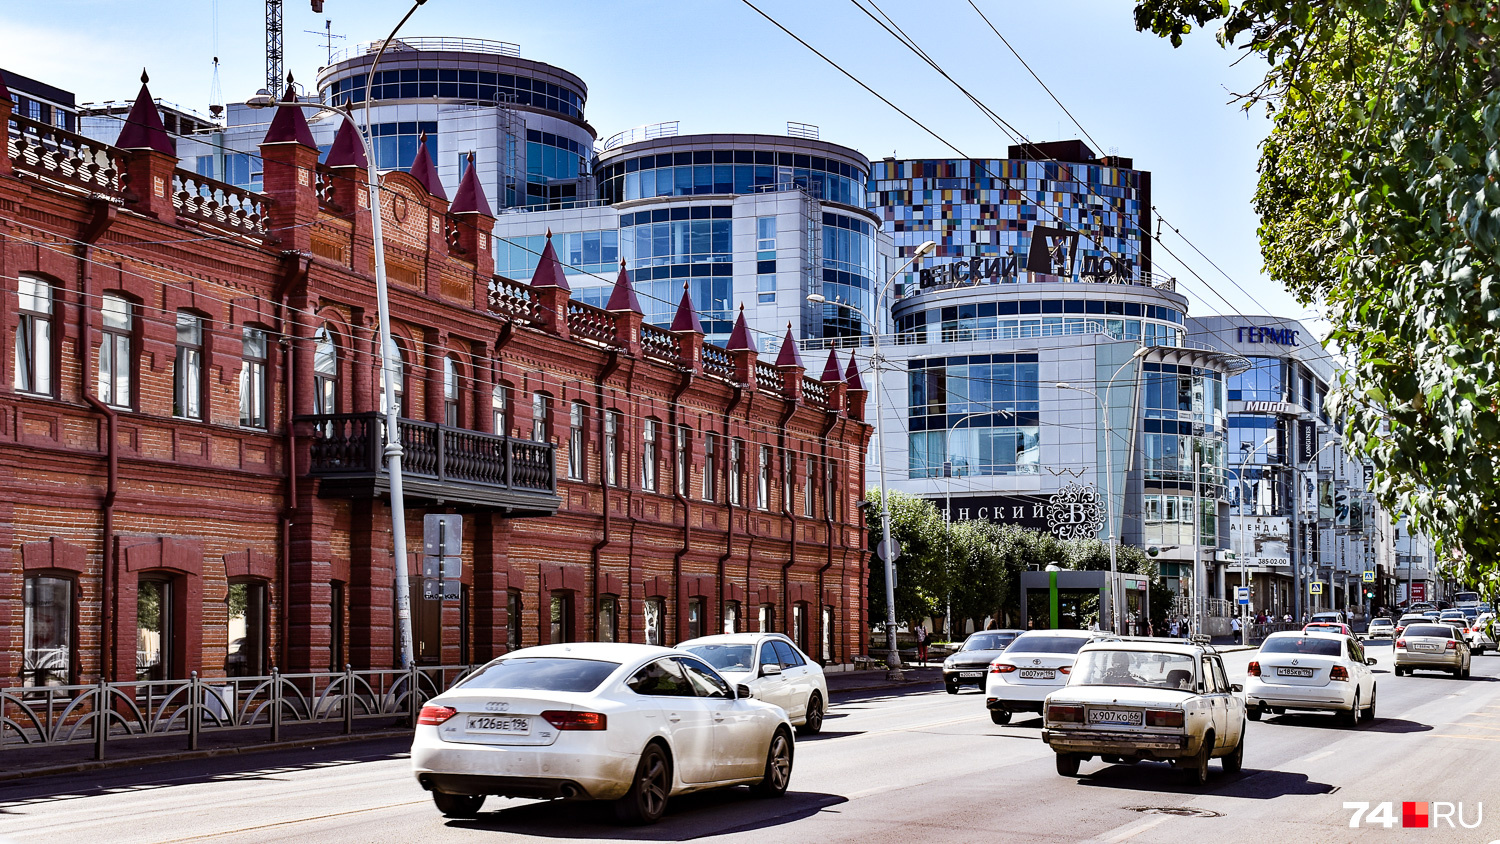 В Екатеринбурге намешано несколько архитектурных стилей, включая конструктивизм, классику и модерн. Очень часто на одном плане видишь слоистую структуру его истории